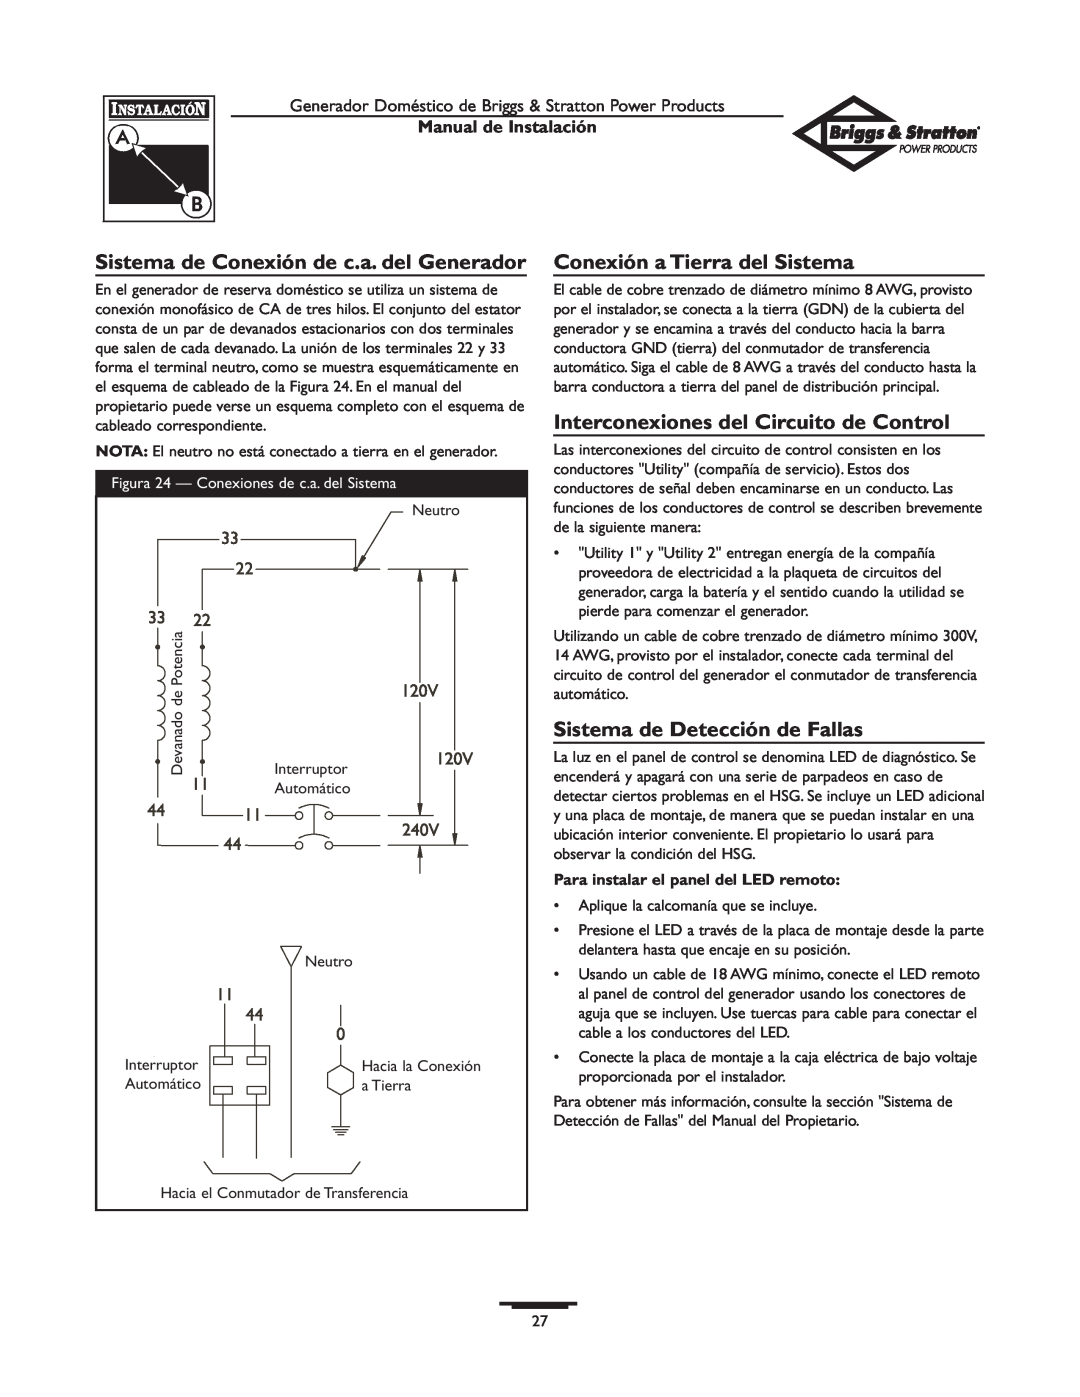 Briggs & Stratton 01938-0 Sistema de Conexión de c.a. del Generador, Conexión a Tierra del Sistema, Manual de Instalación 